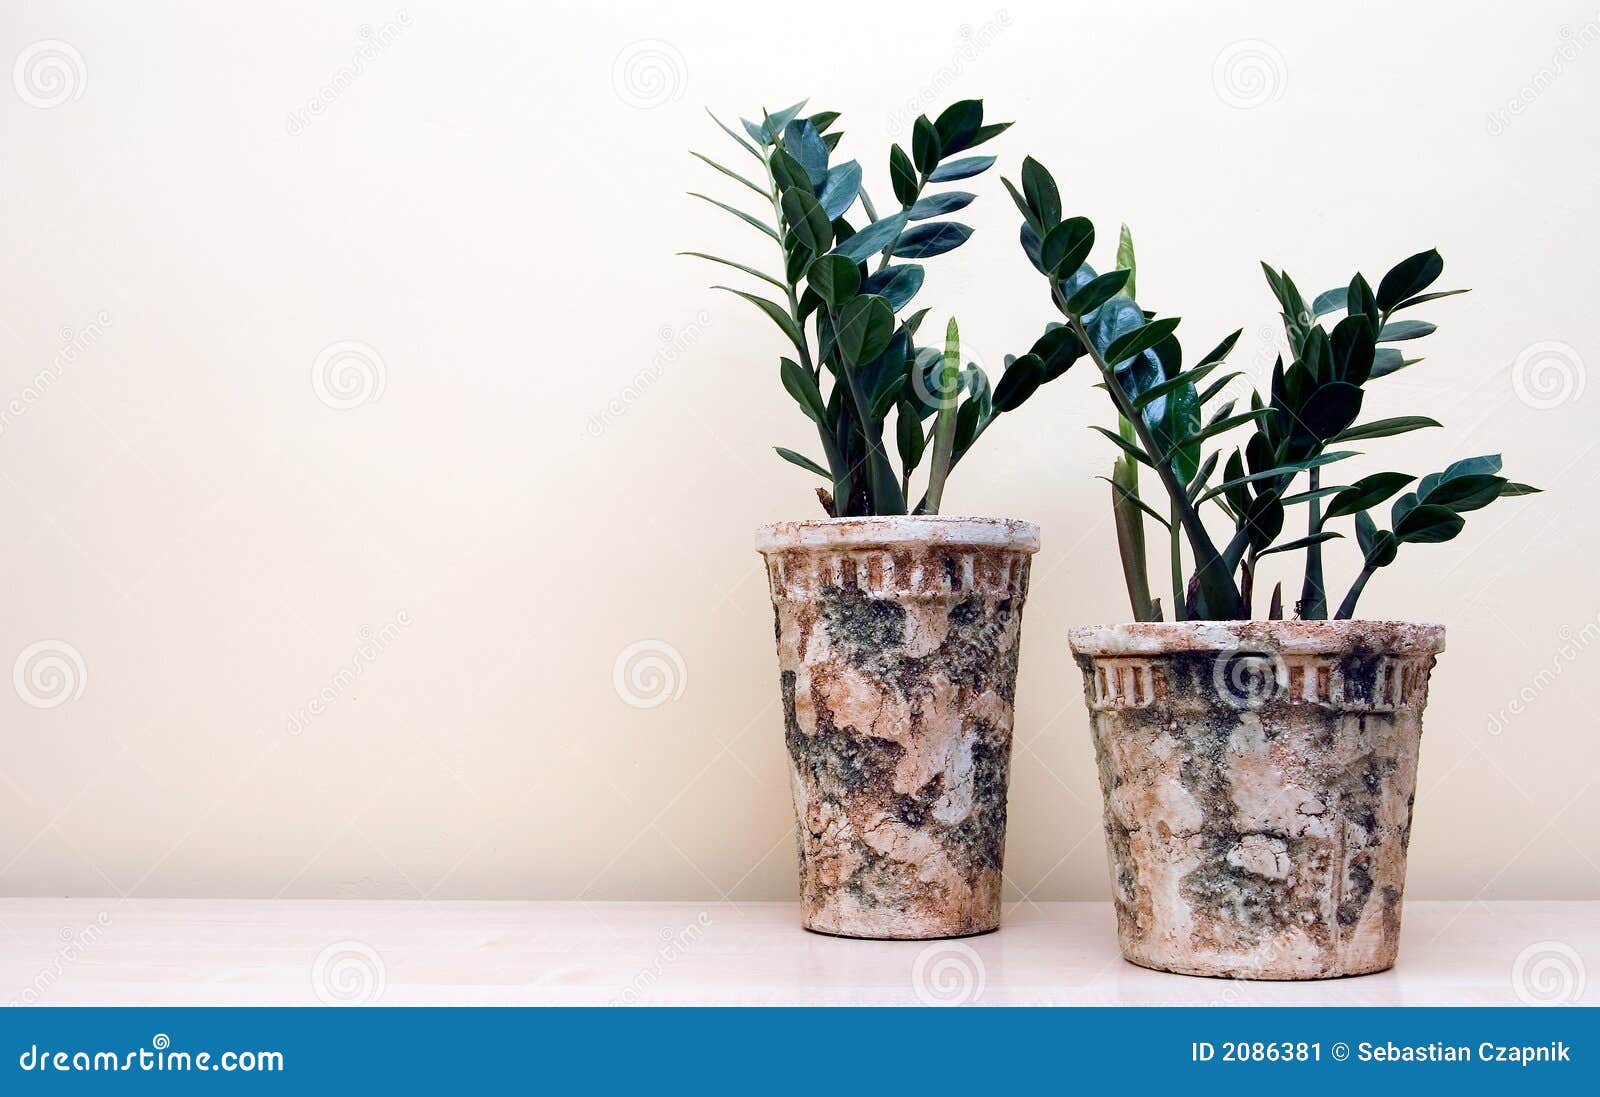 two pot plants